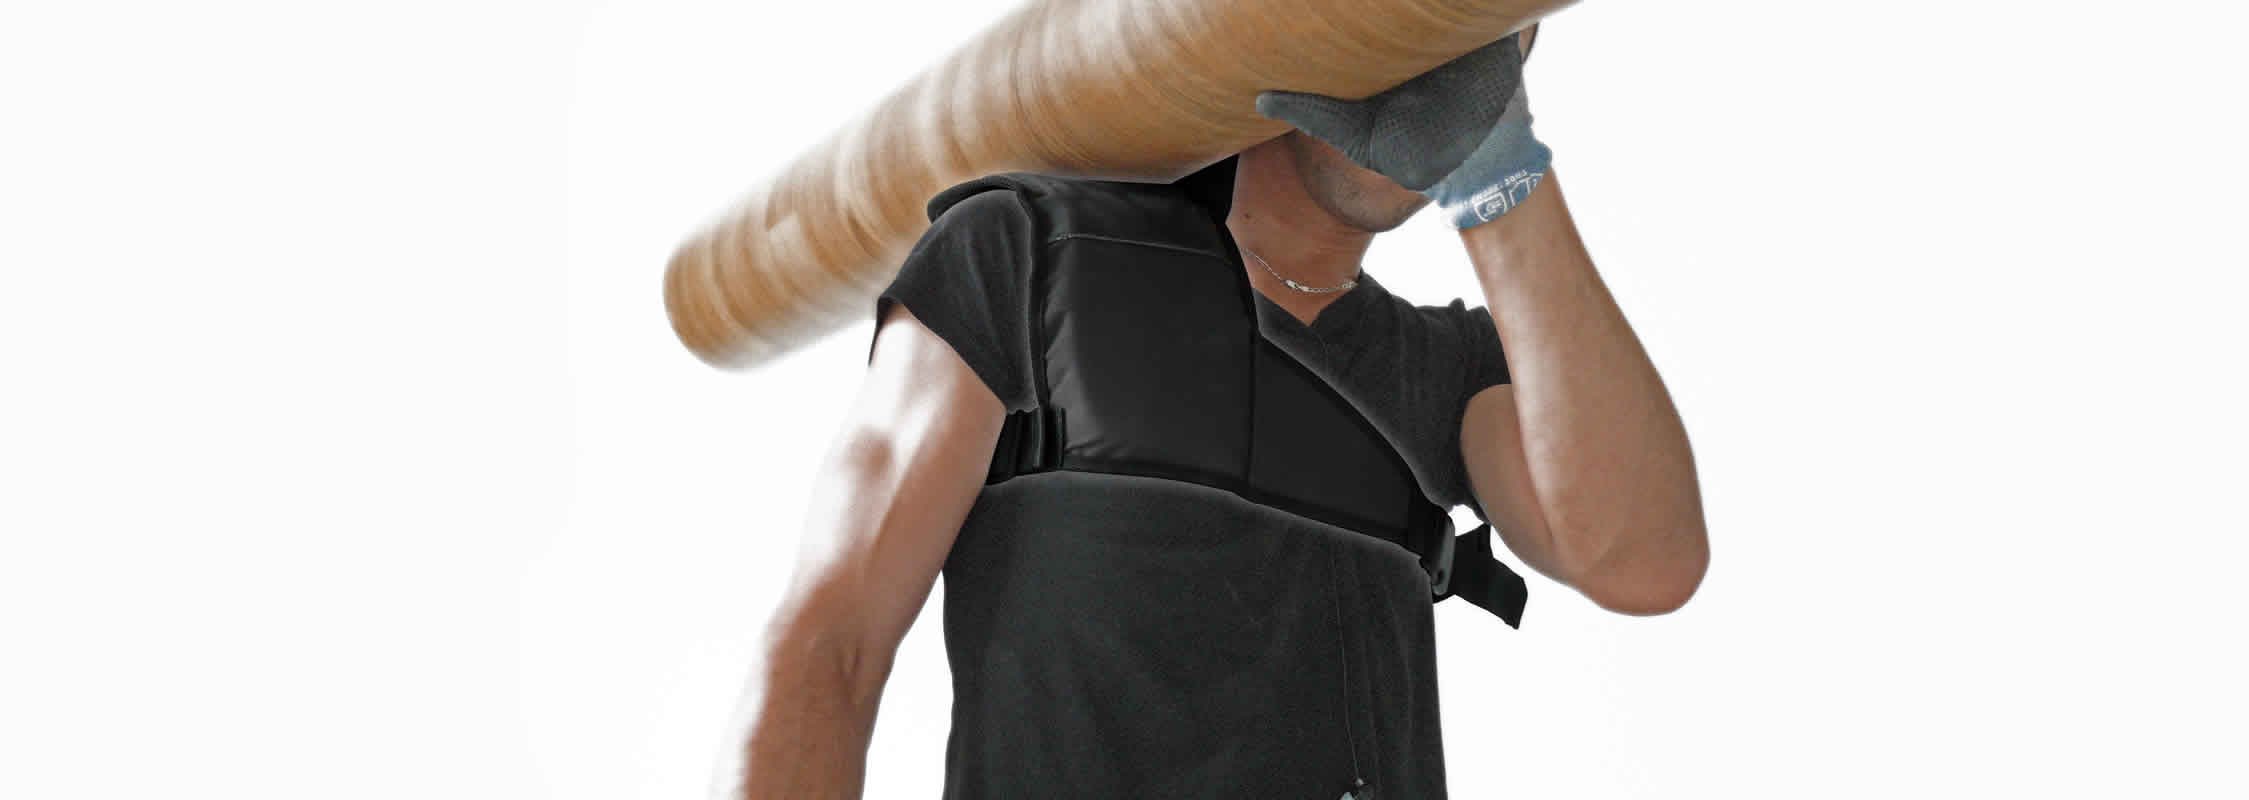 Epaulière Spal utilisée par un artisan qui protège son épaule en portant du matériel